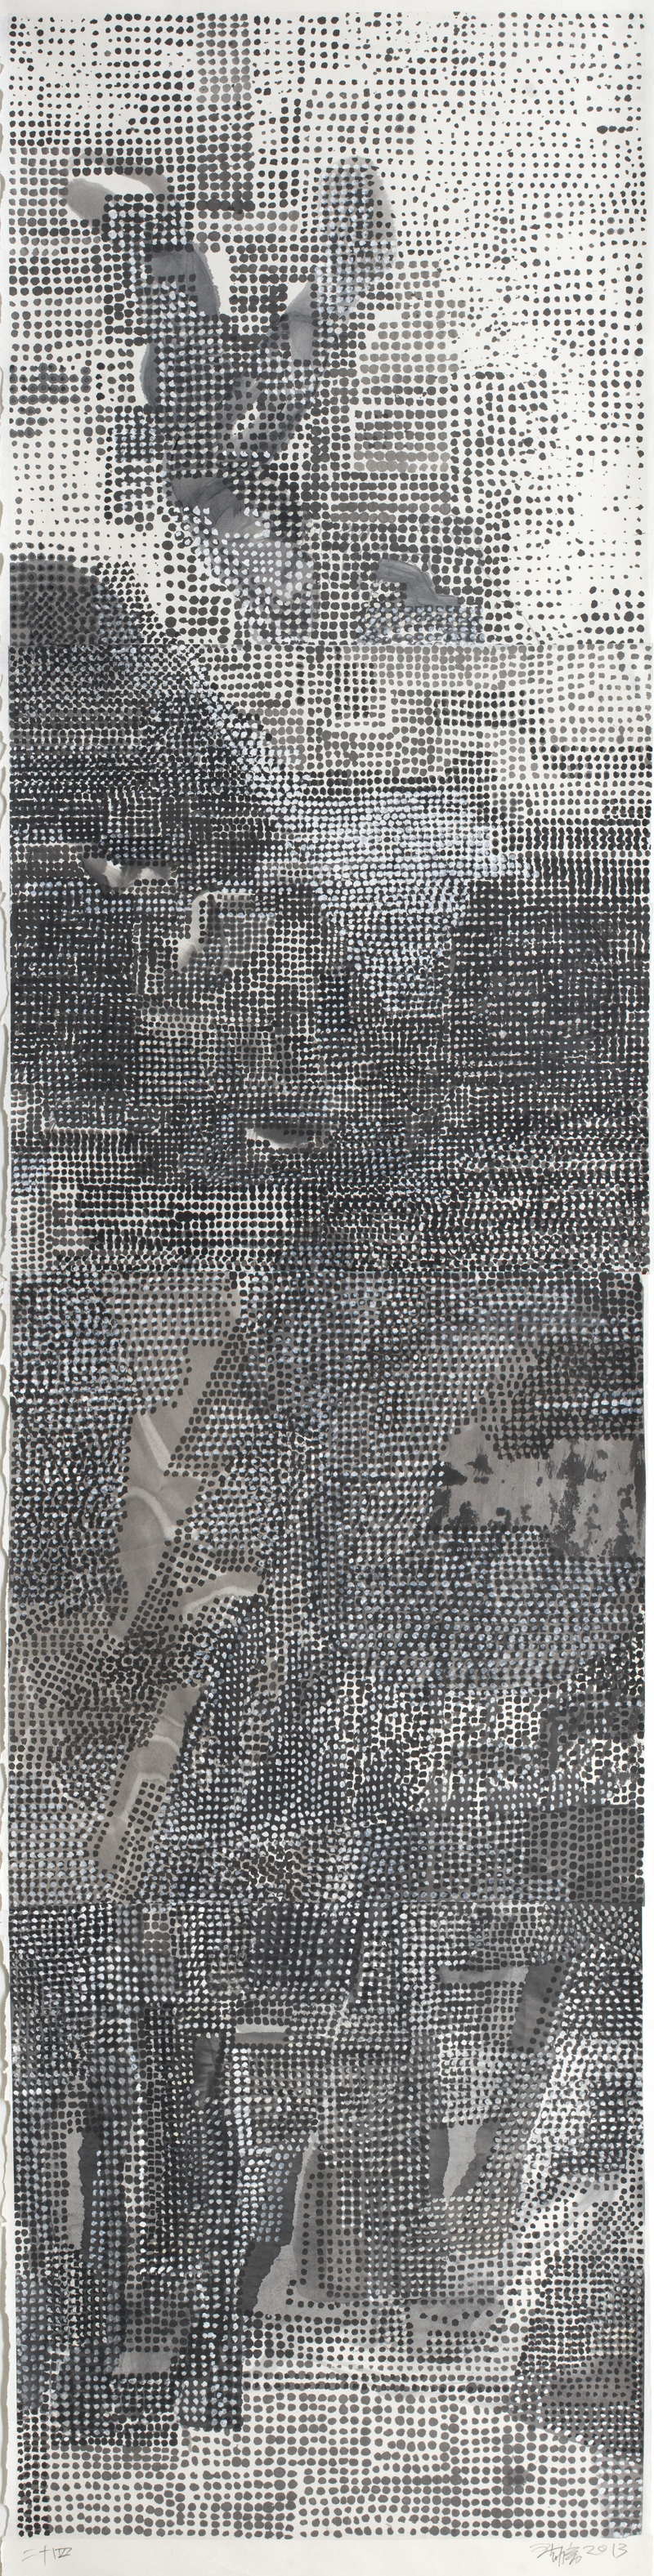 王劼音WANG Jieyin 《山水笔记-二十四》 Landscape Notes－24   274×69cm  纸本水墨Ink on Paper 2013